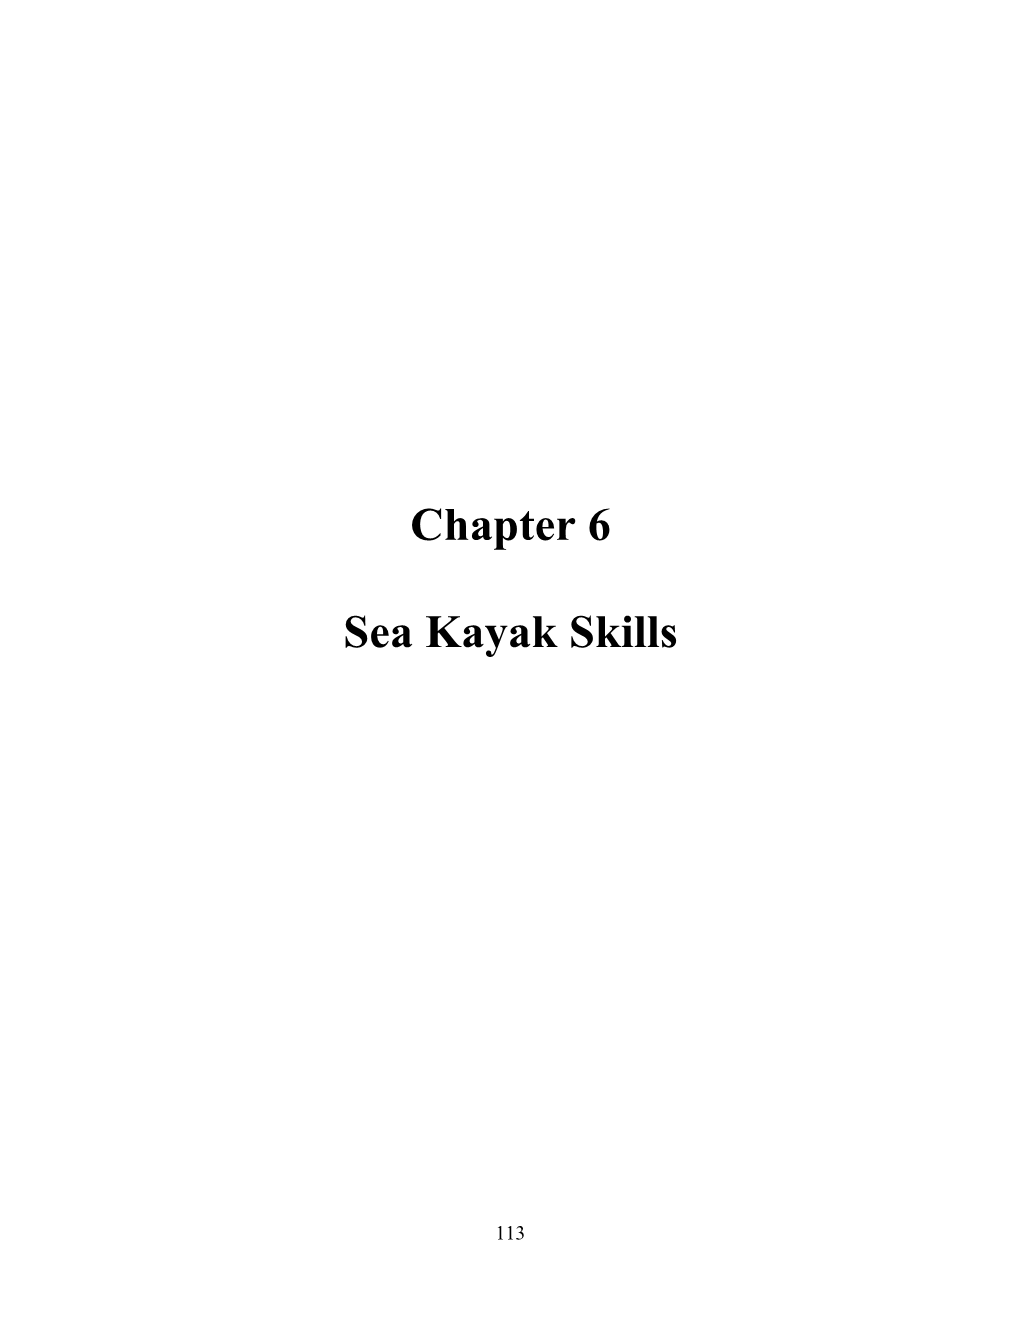 Chapter 6: Sea Kayak Skills